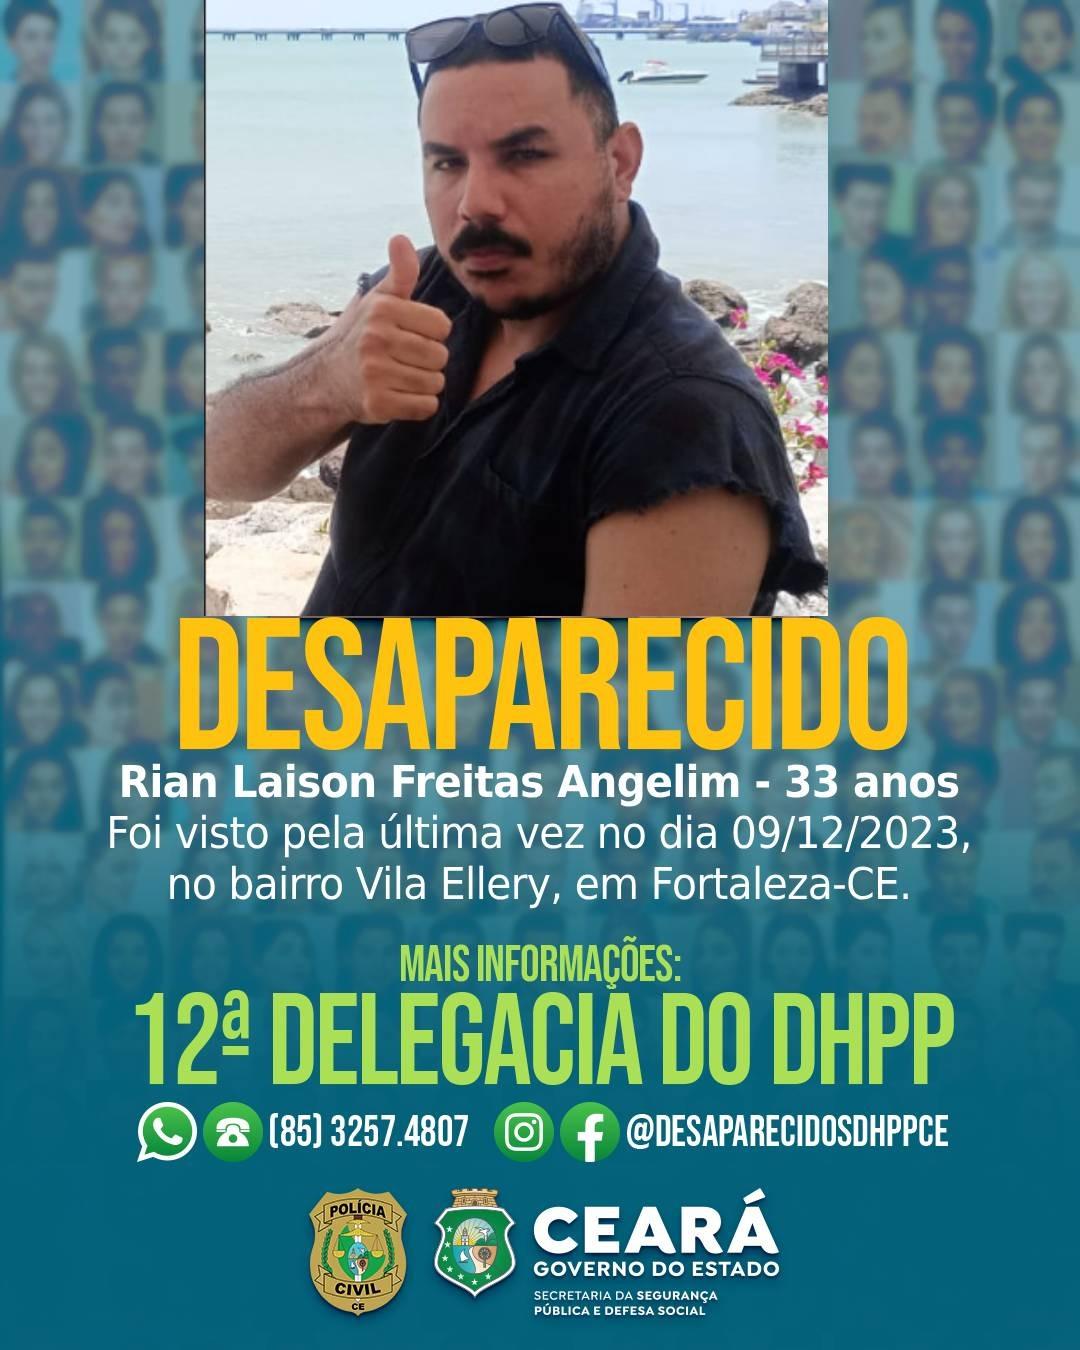 Cartaz de desaparecido feito pela Polícia Civil do Ceará informando do sumiço de Rian Laison Freitas Angelim, de 33 anos, visto pela última vez no bairro Vila Ellery, em Fortaleza